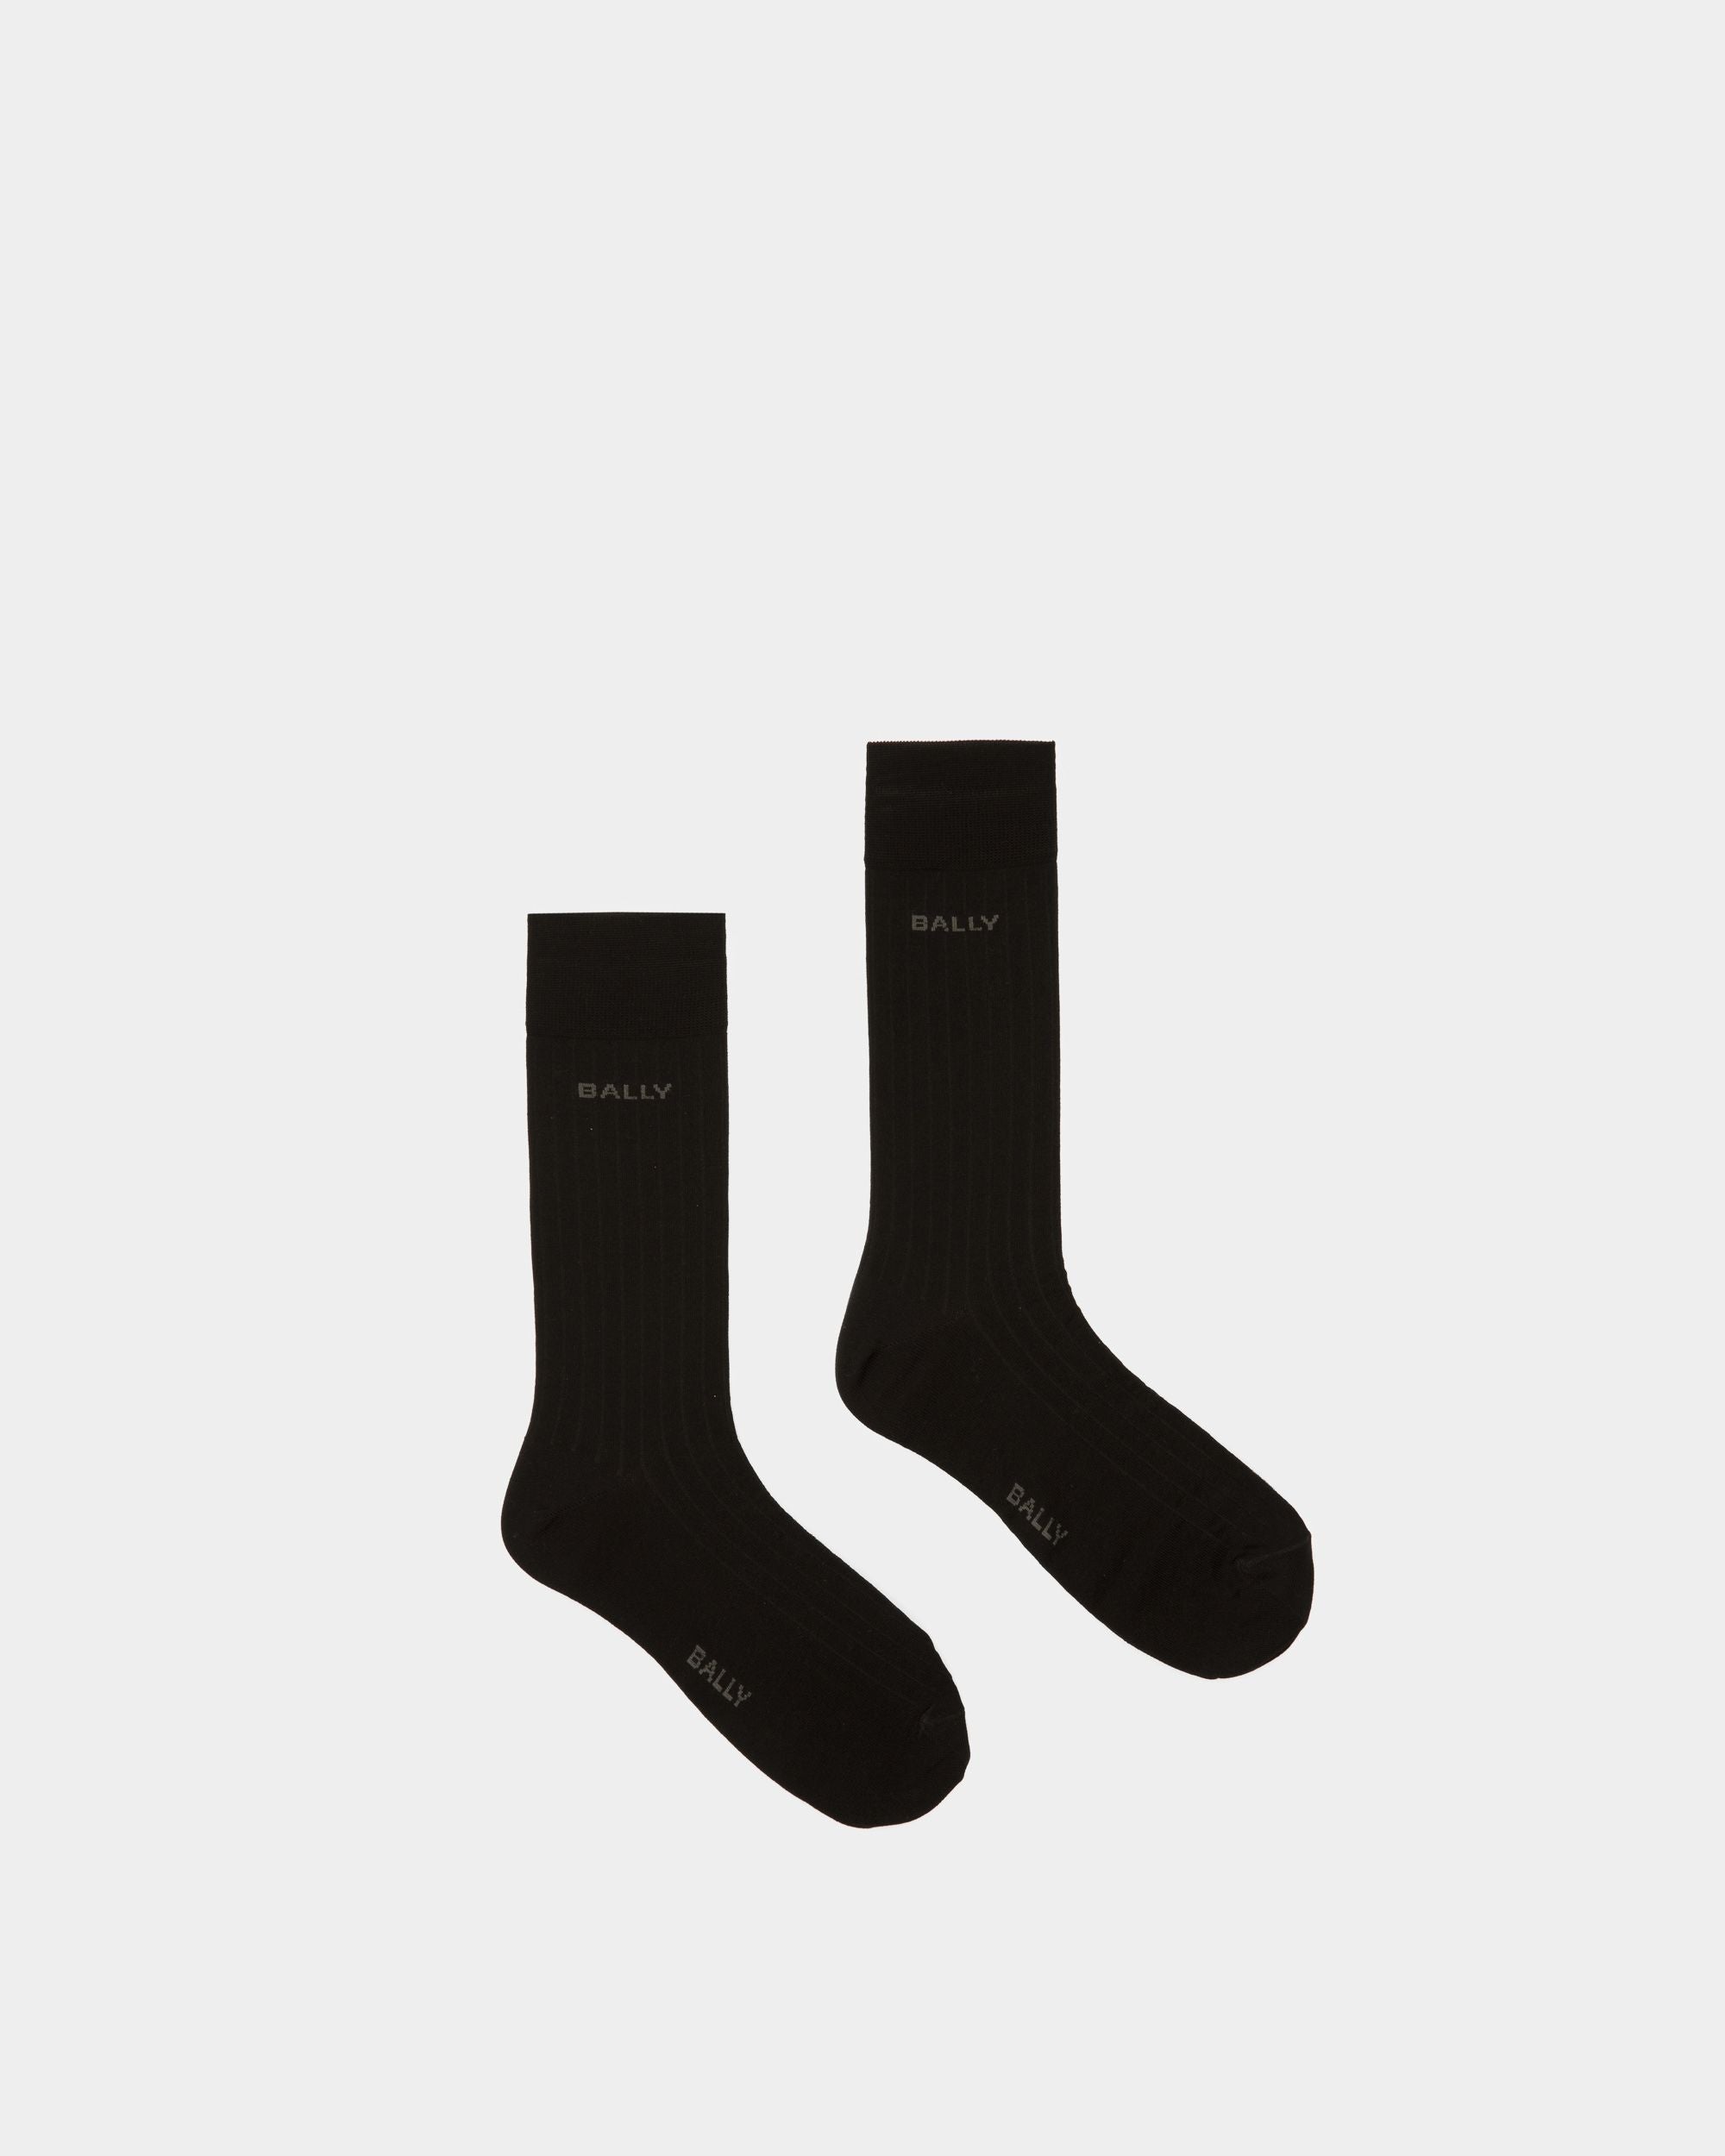 Gerippte Logo-Socken | Herrenstrümpfe | Baumwollmischung in Schwarz | Bally | Still Life Oberteil